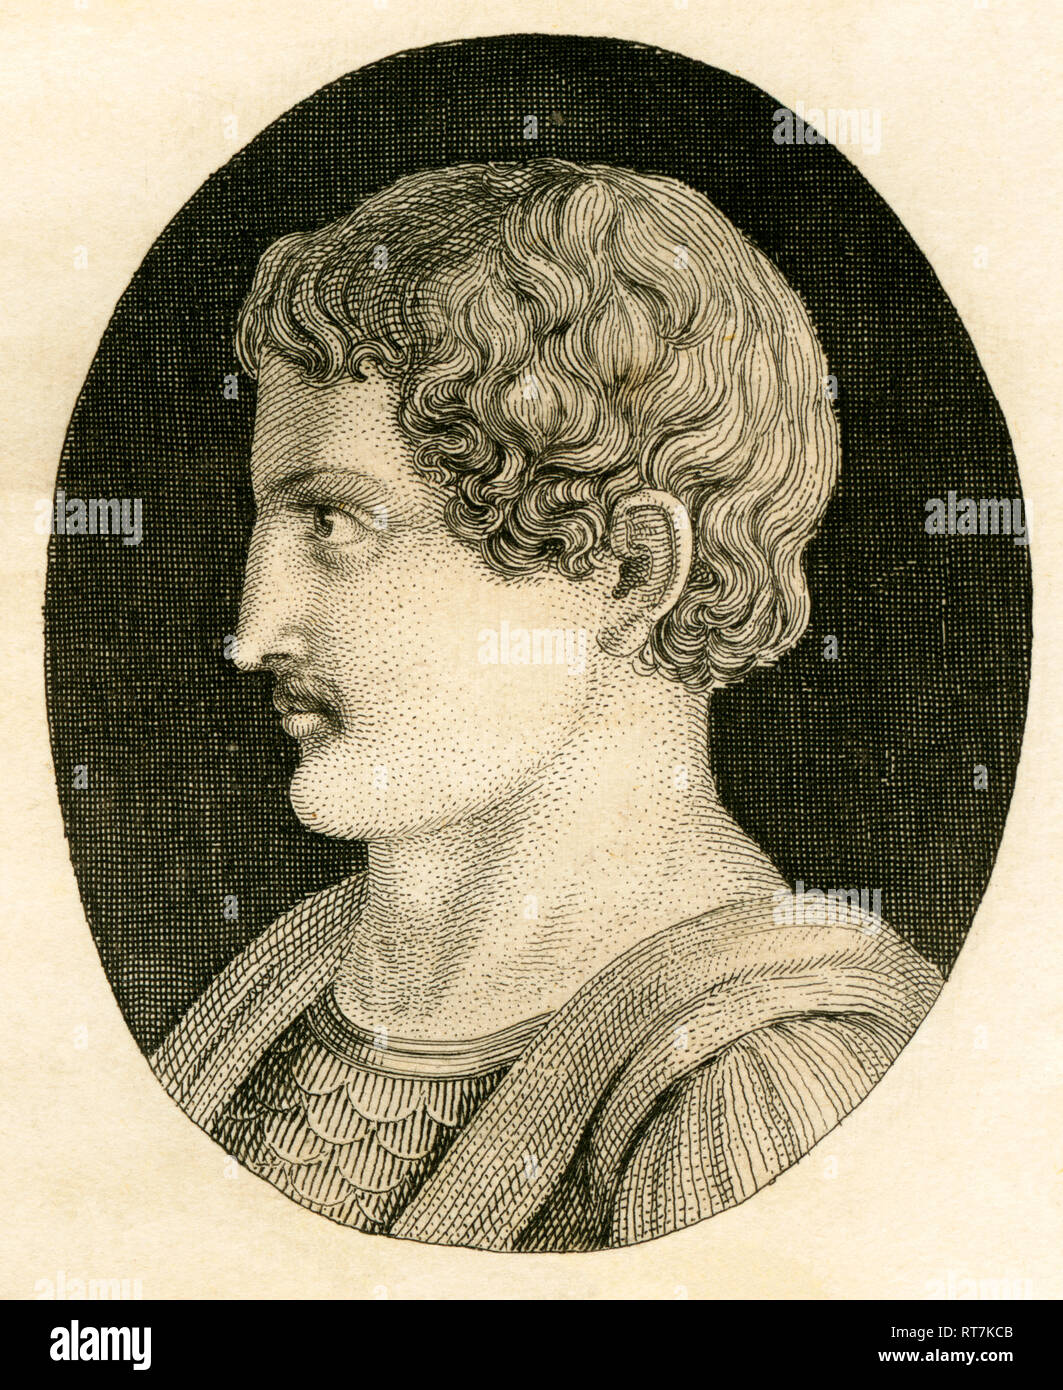 Sulla, römischer Politiker, Strategen und Despot, Kupferstich von Strahlheim, ungefähr 1840 Th., Artist's Urheberrecht nicht geklärt zu werden. Stockfoto